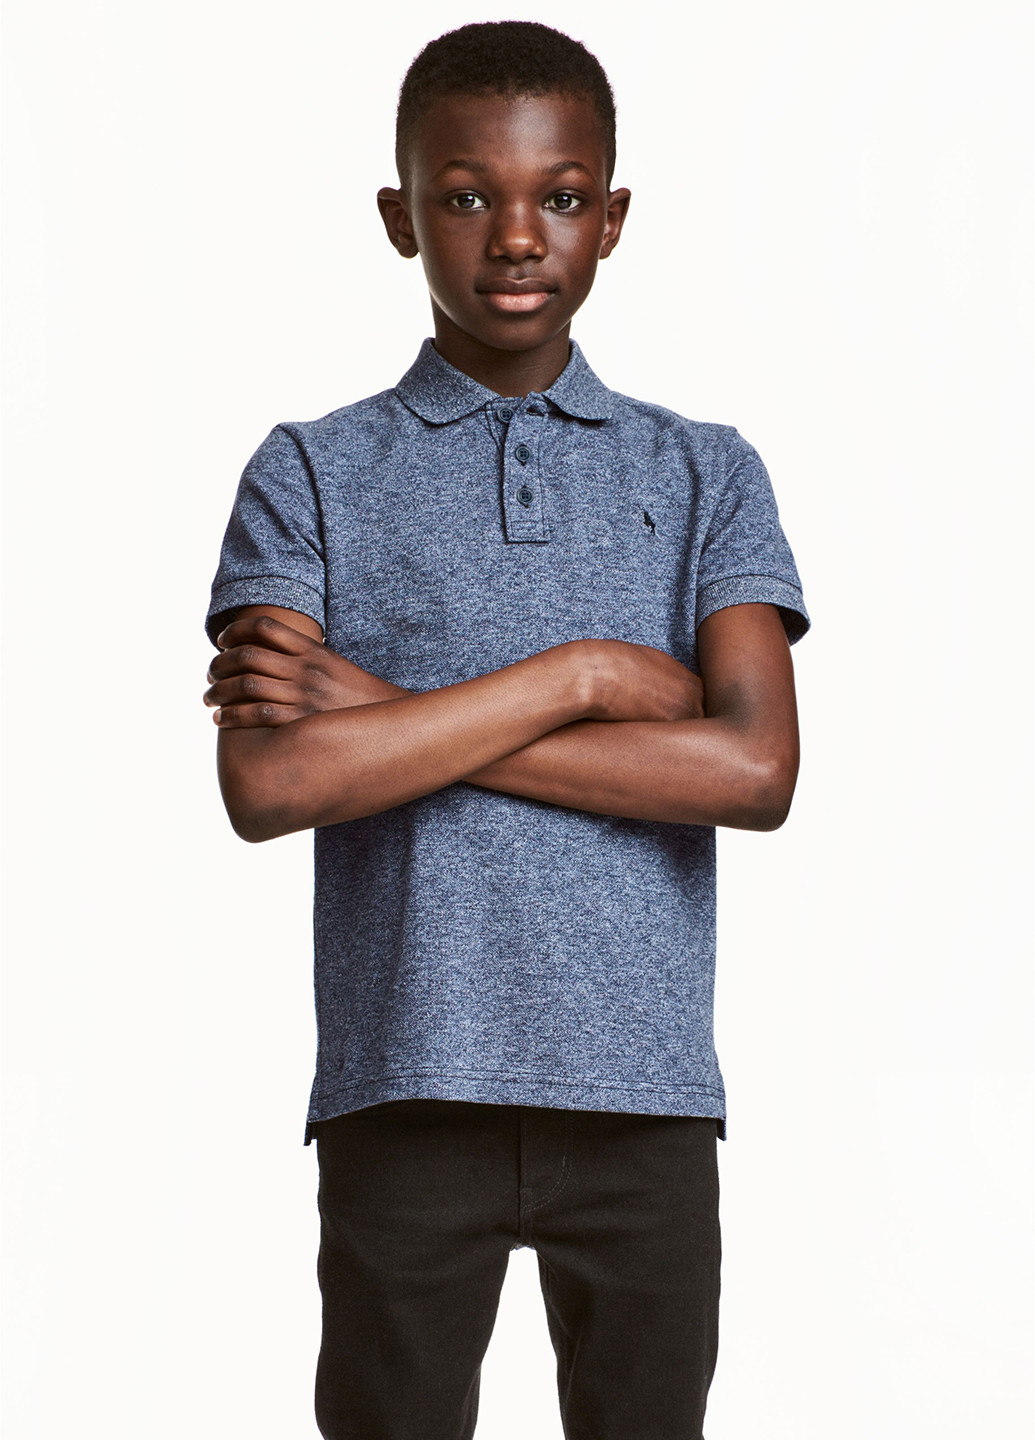 Синяя детская футболка-поло для мальчика H&M меланжевая